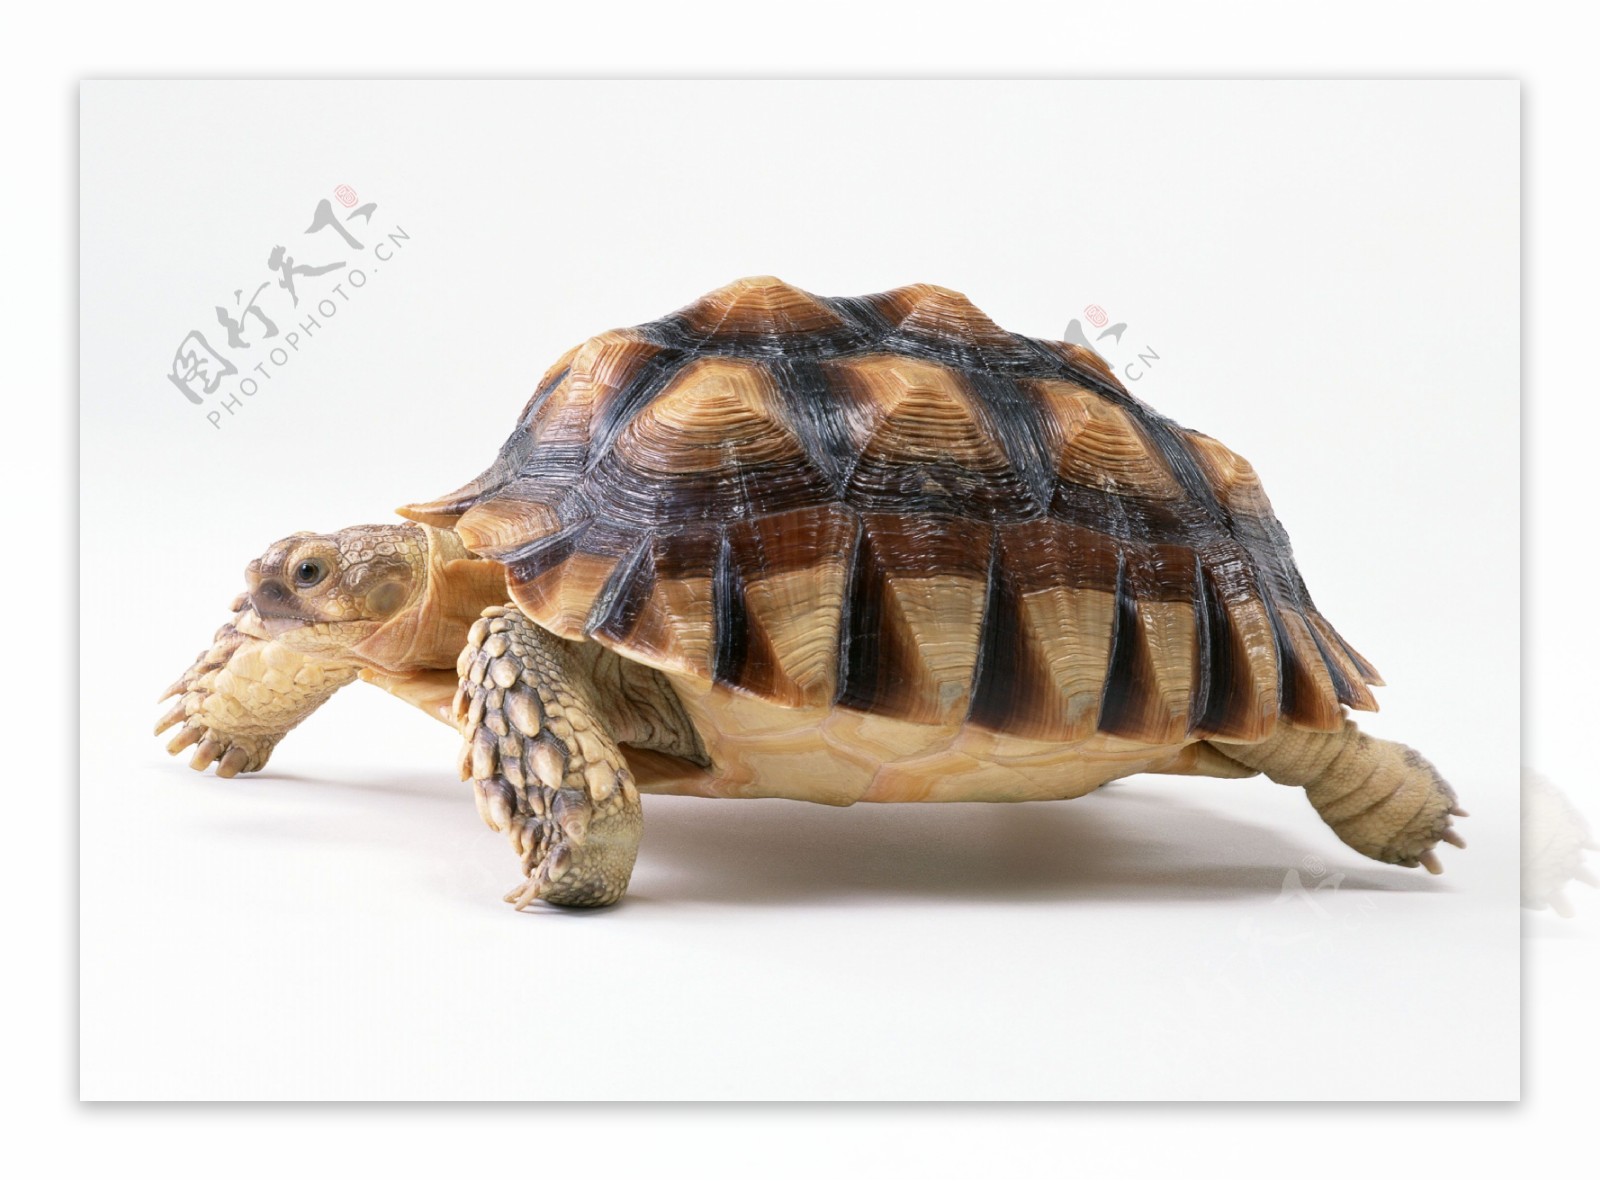 小动物乌龟海龟动物世界千年乌龟王八稀有品种